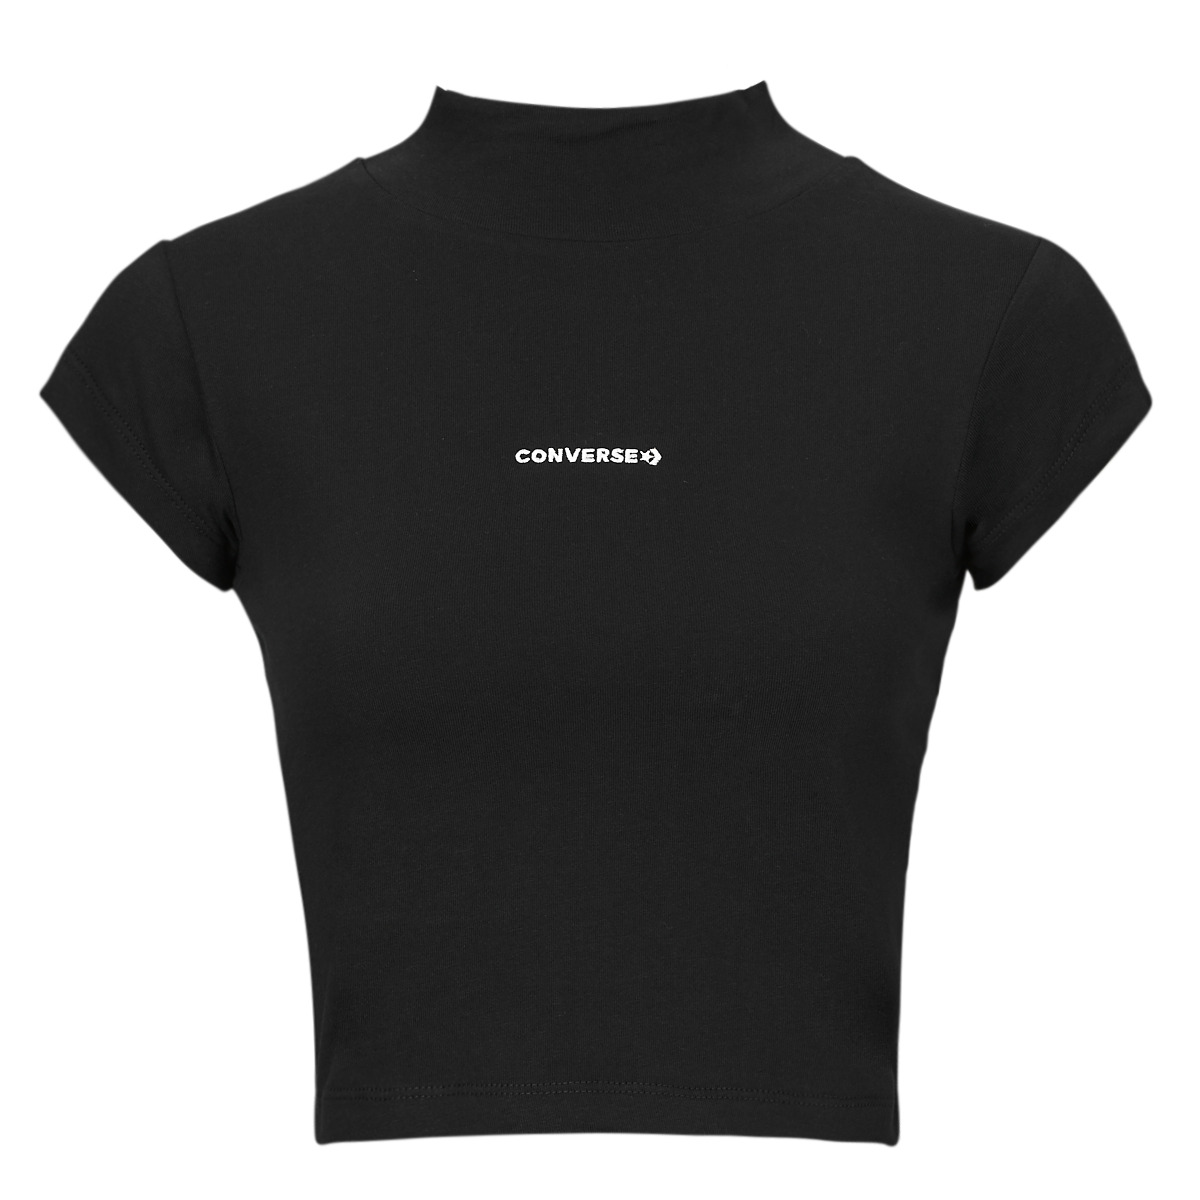 Textil Ženy Trička s krátkým rukávem Converse WORDMARK TOP BLACK Černá